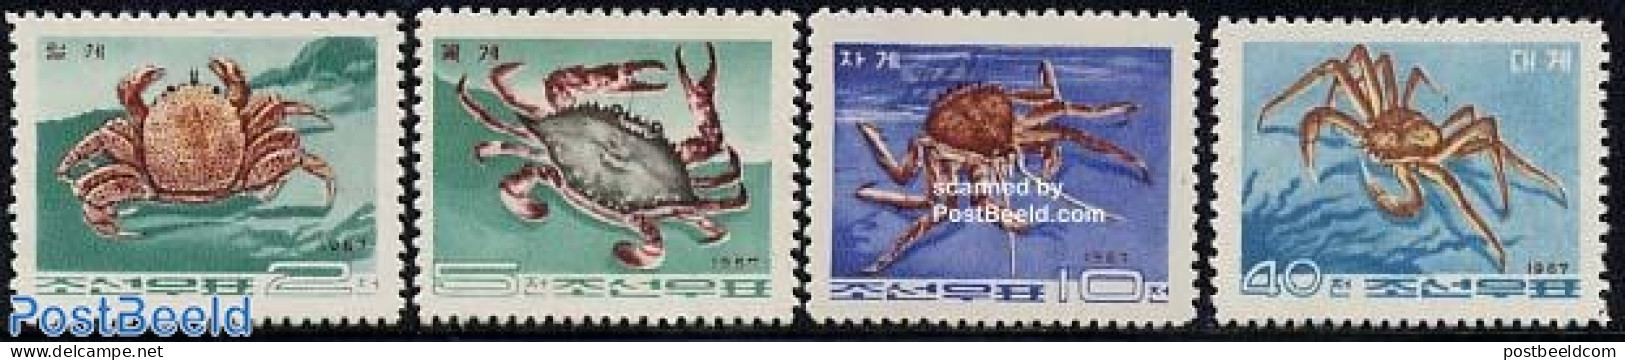 Korea, North 1967 Crabs 4v, Mint NH, Nature - Shells & Crustaceans - Crabs And Lobsters - Maritiem Leven